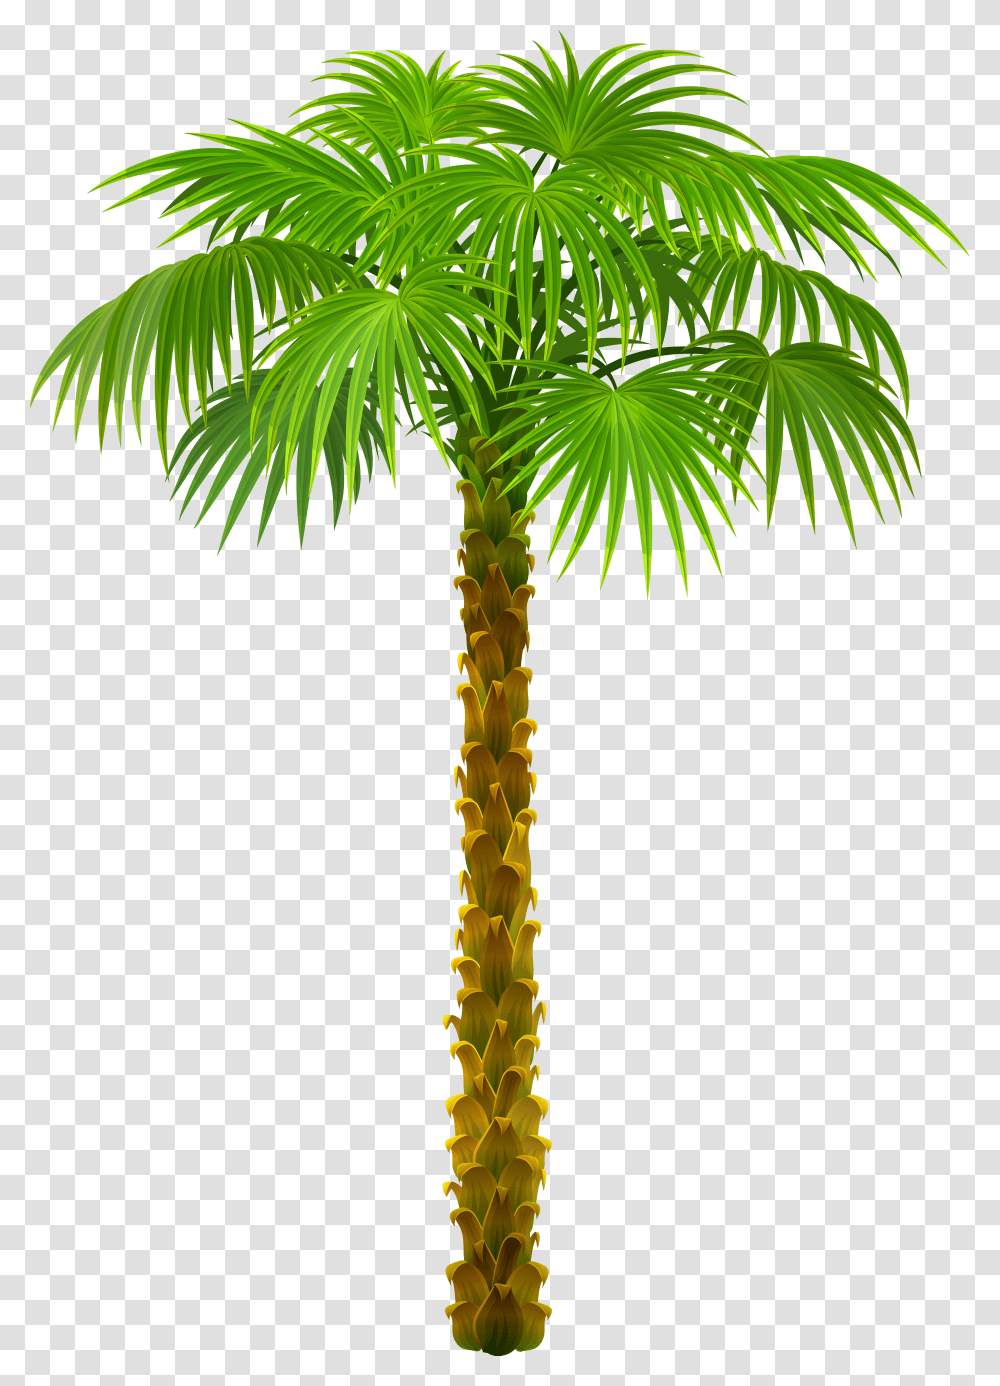 Palm Tree Top View, Plant, Arecaceae Transparent Png